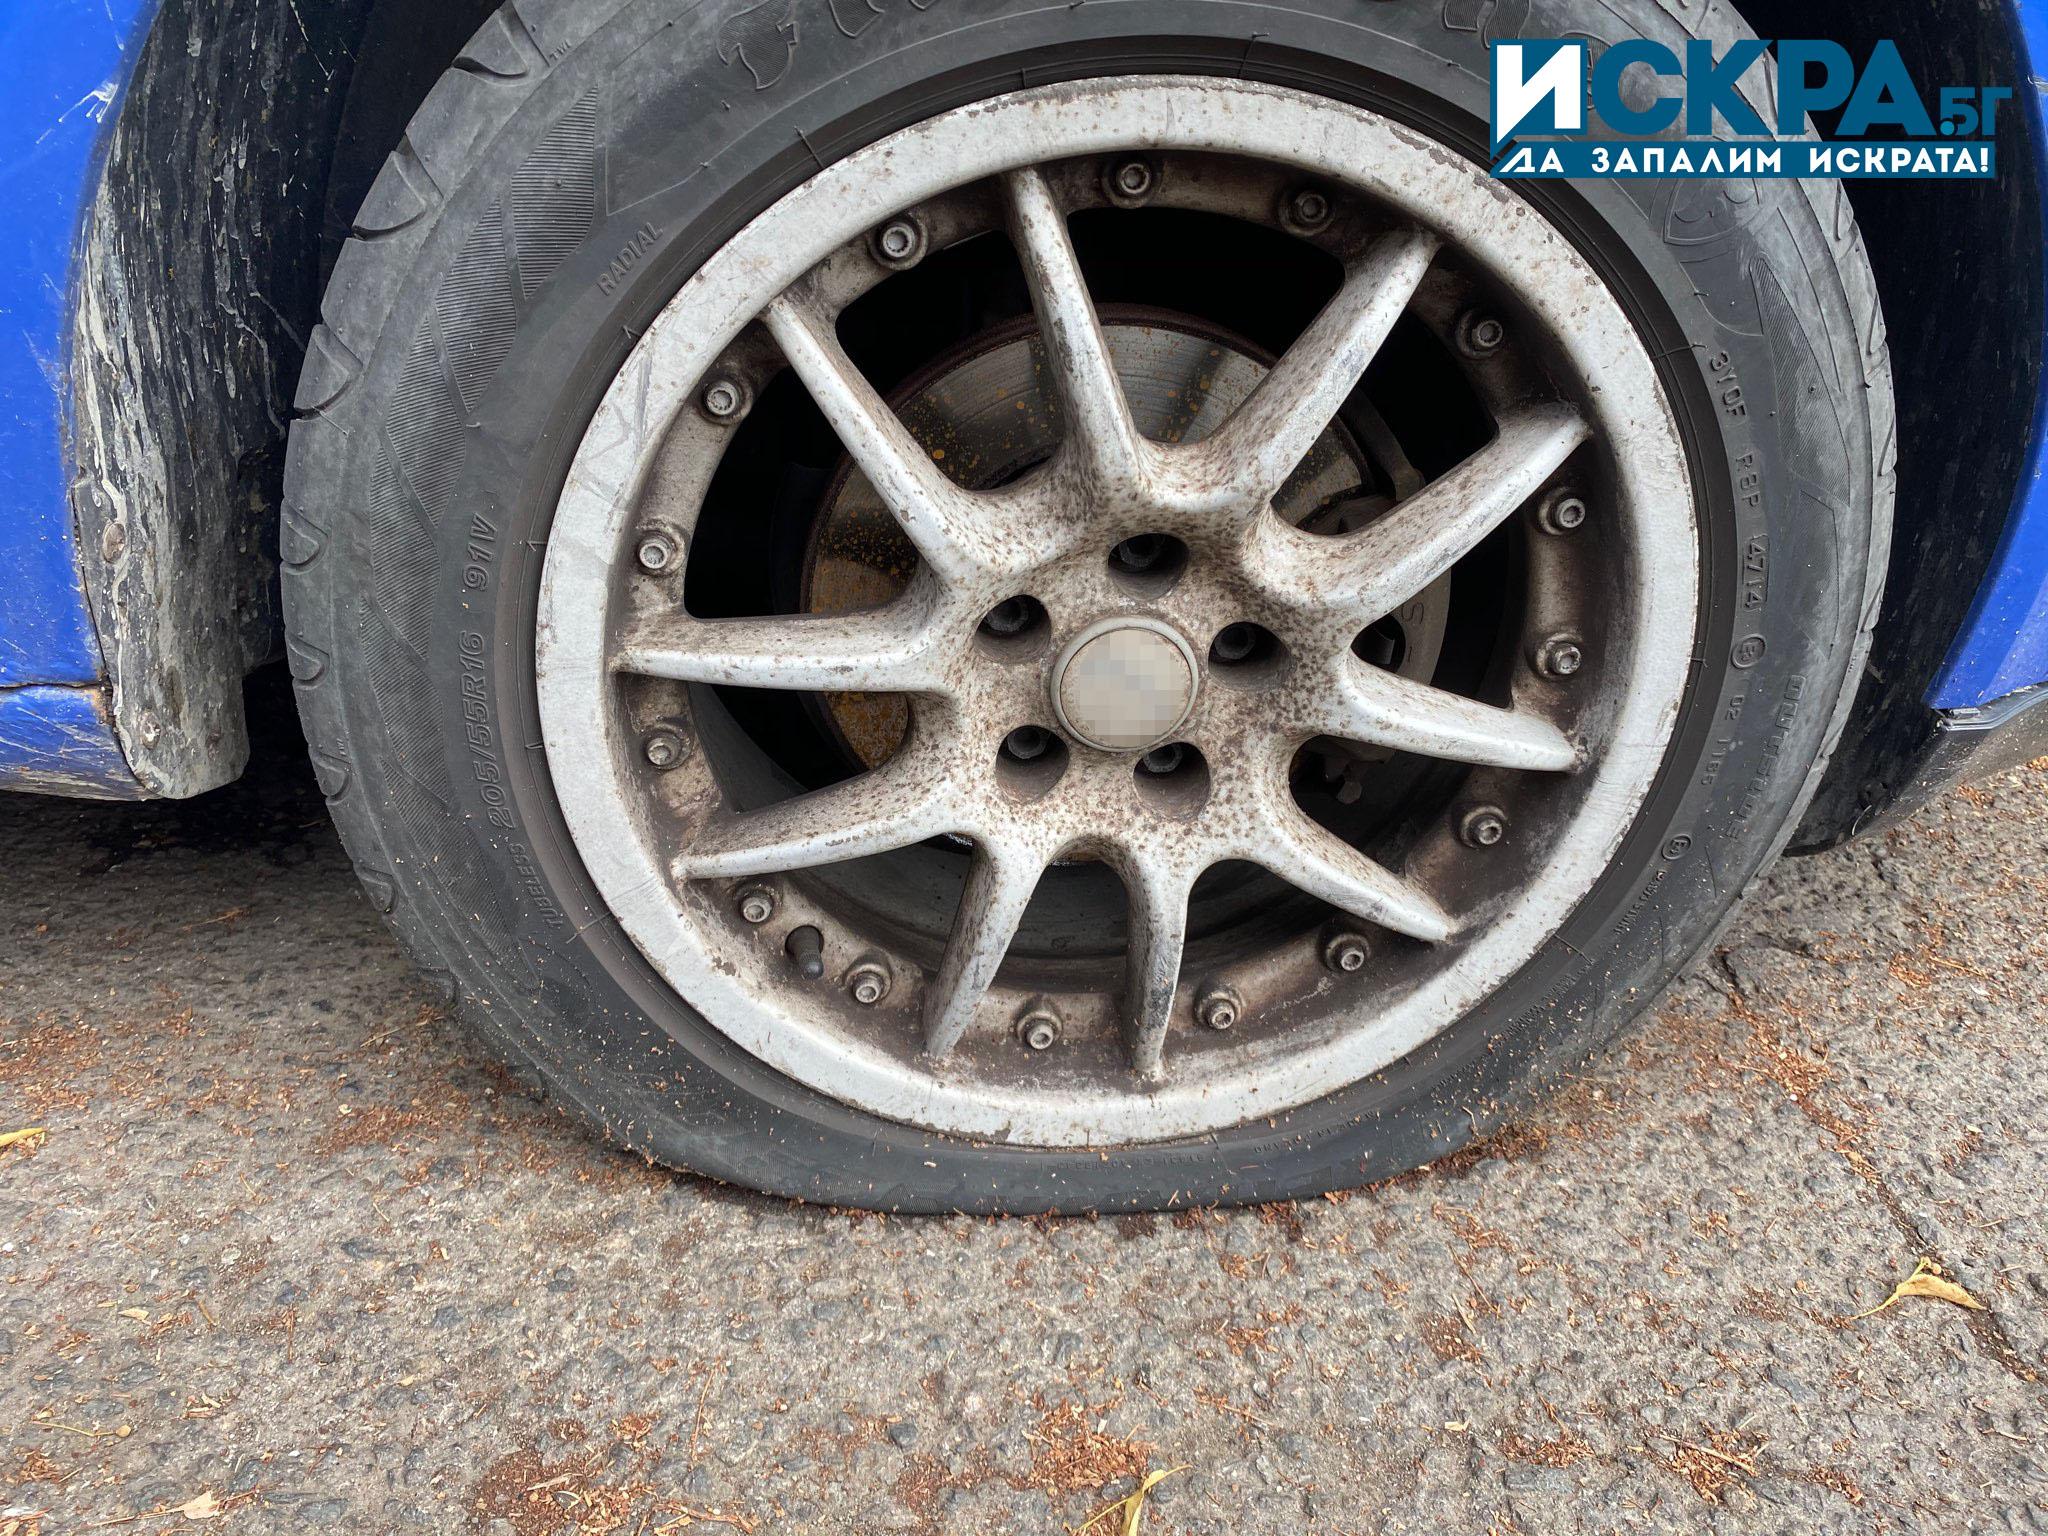 Ломски полицаи са разкрили мъж, срязал гуми на лек автомобил